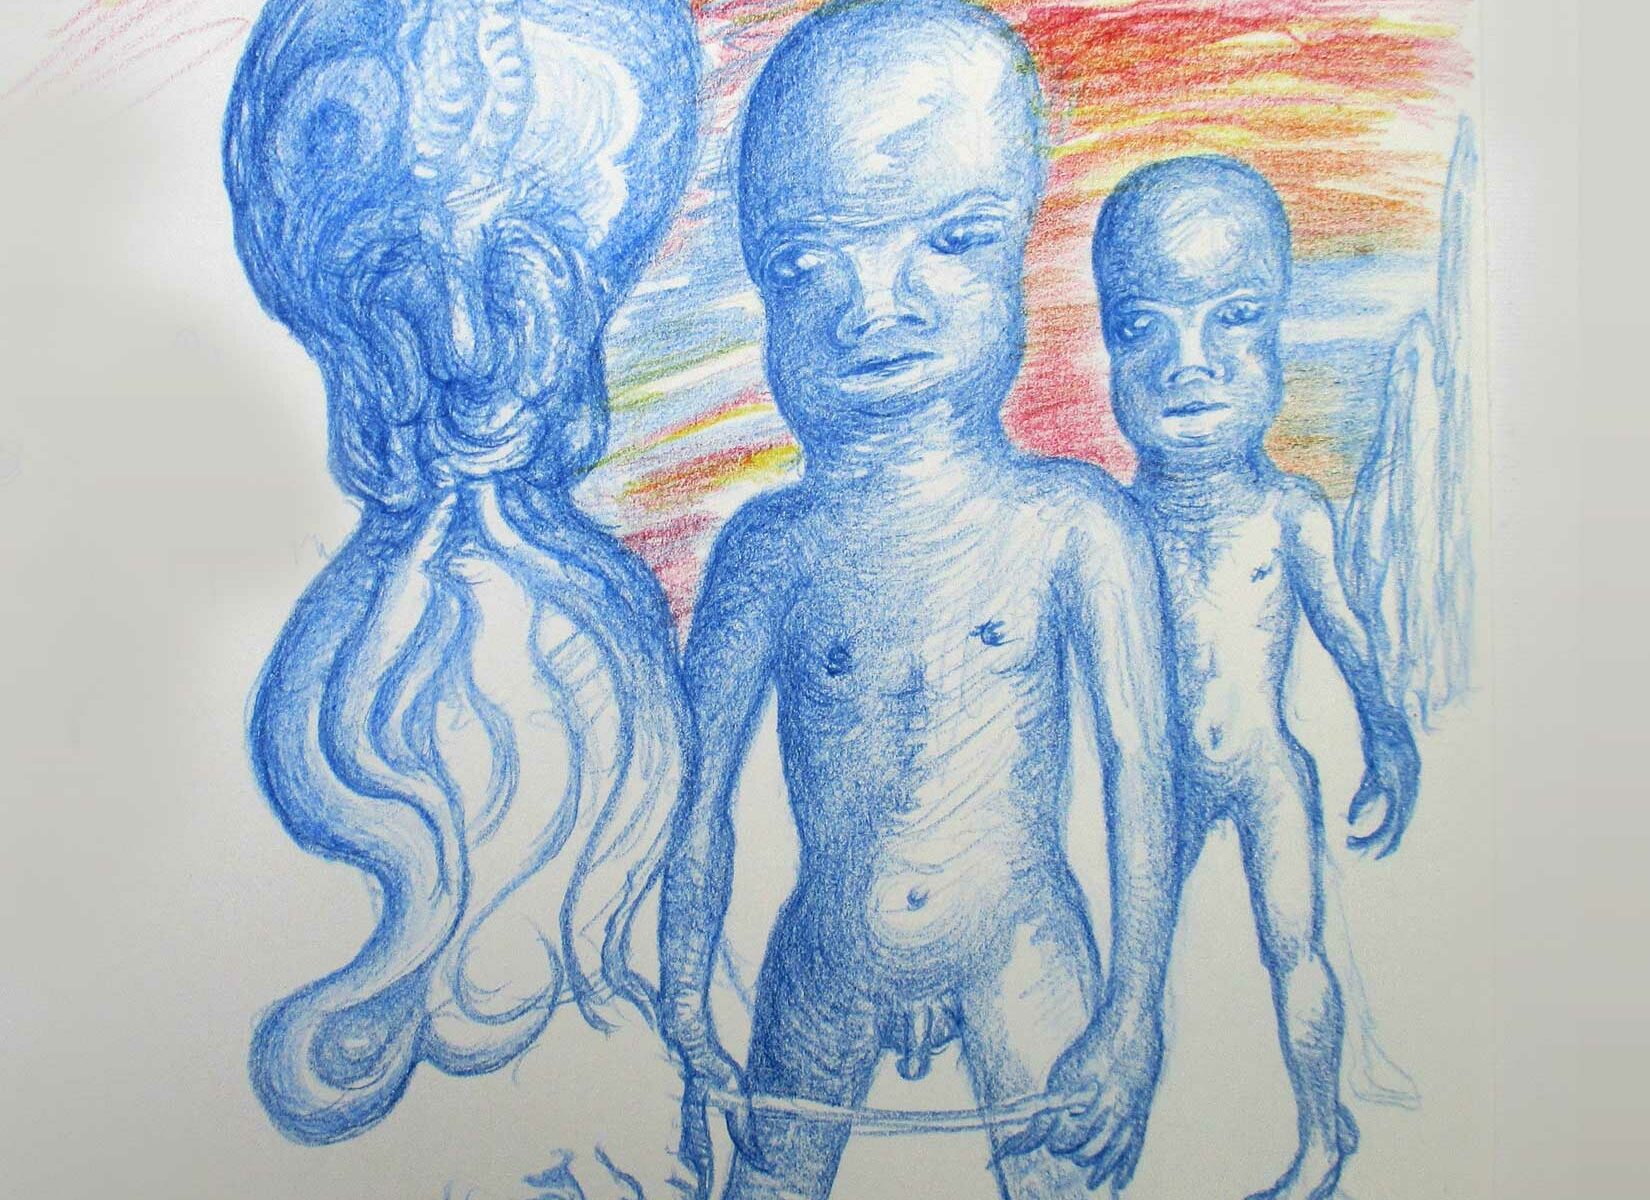 Falsche Außerirdische, 1995, Buntfarbstift auf Zeichenpapier